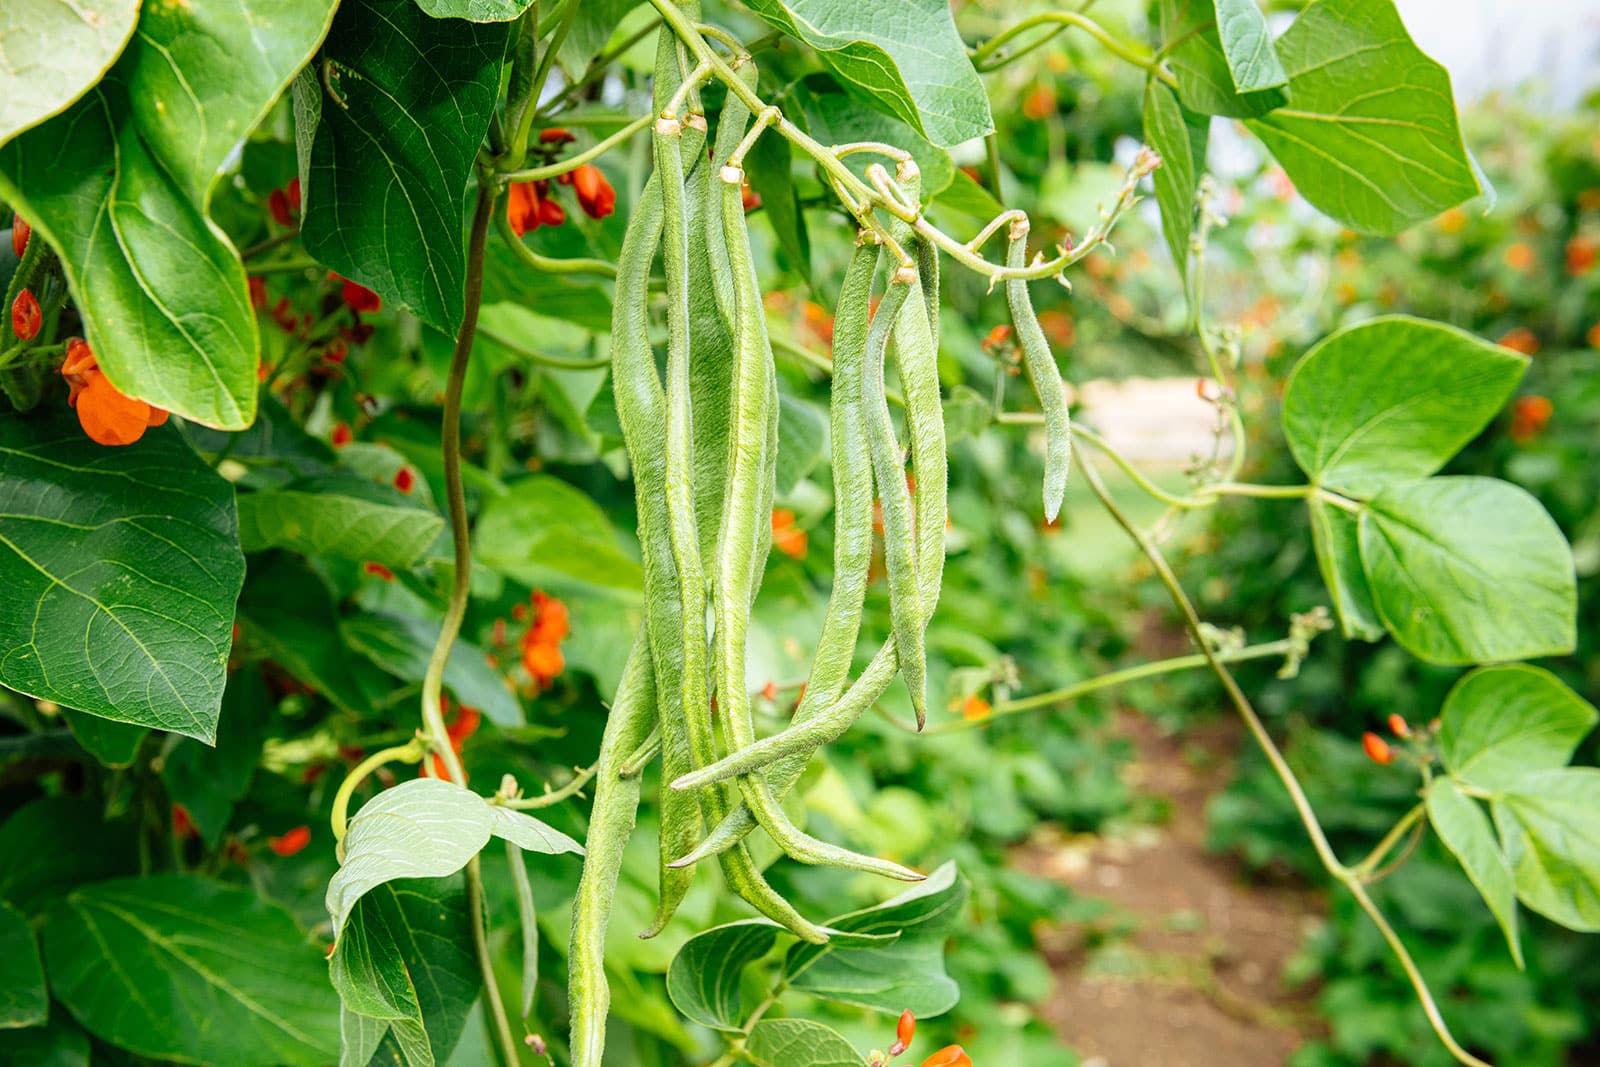 Scarlet runner beans growing on vines